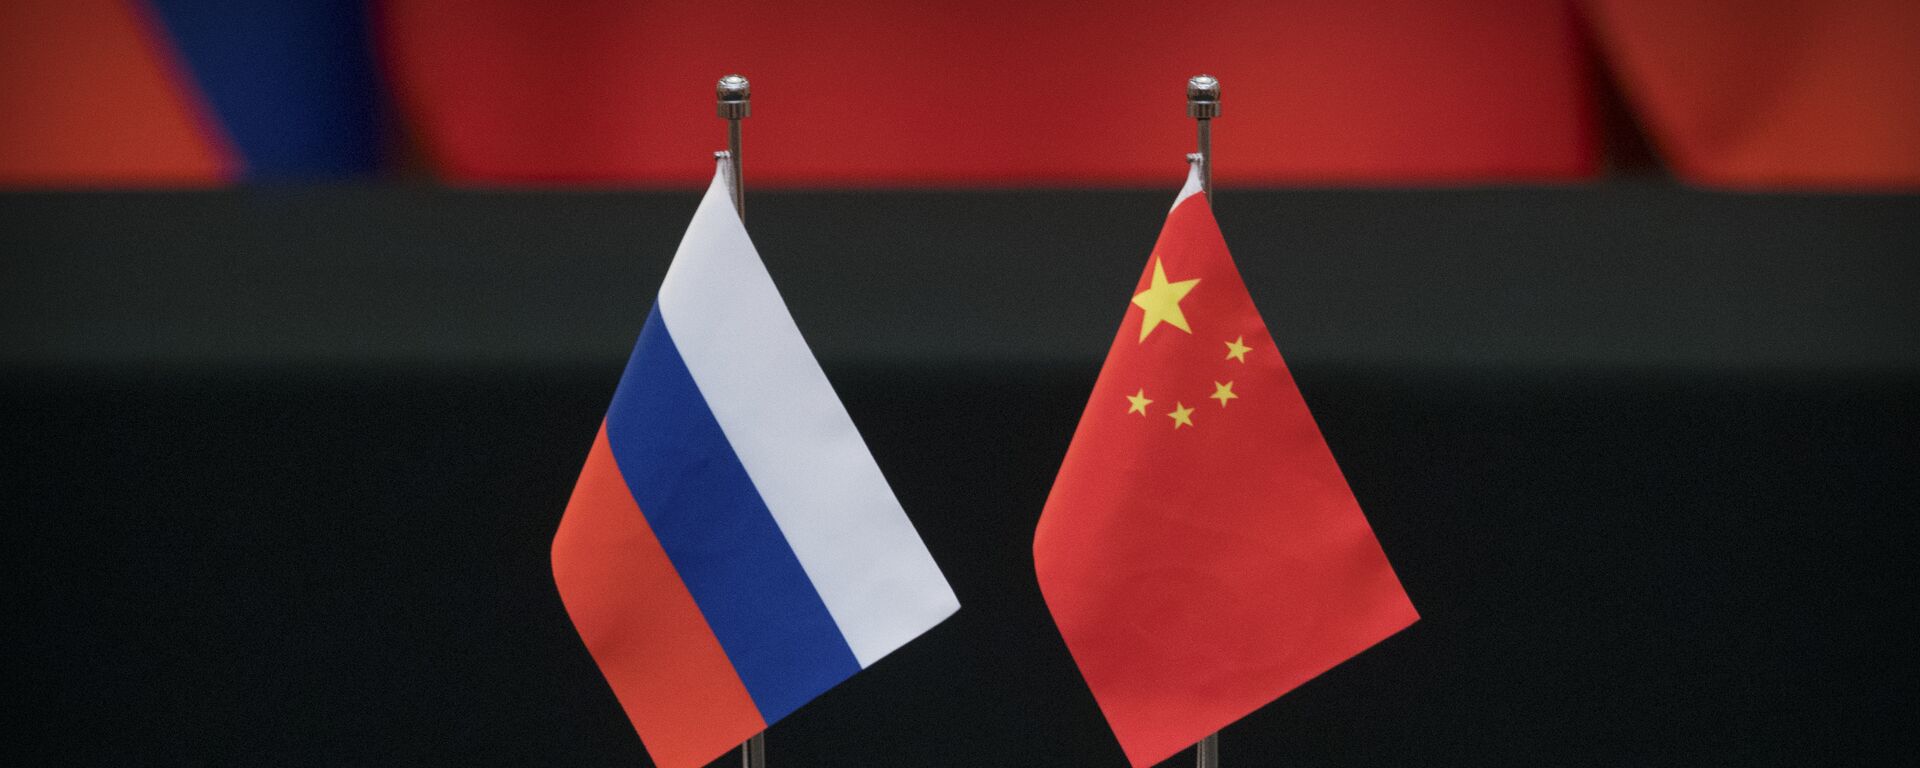 Las banderas de Rusia y China - Sputnik Mundo, 1920, 29.11.2021